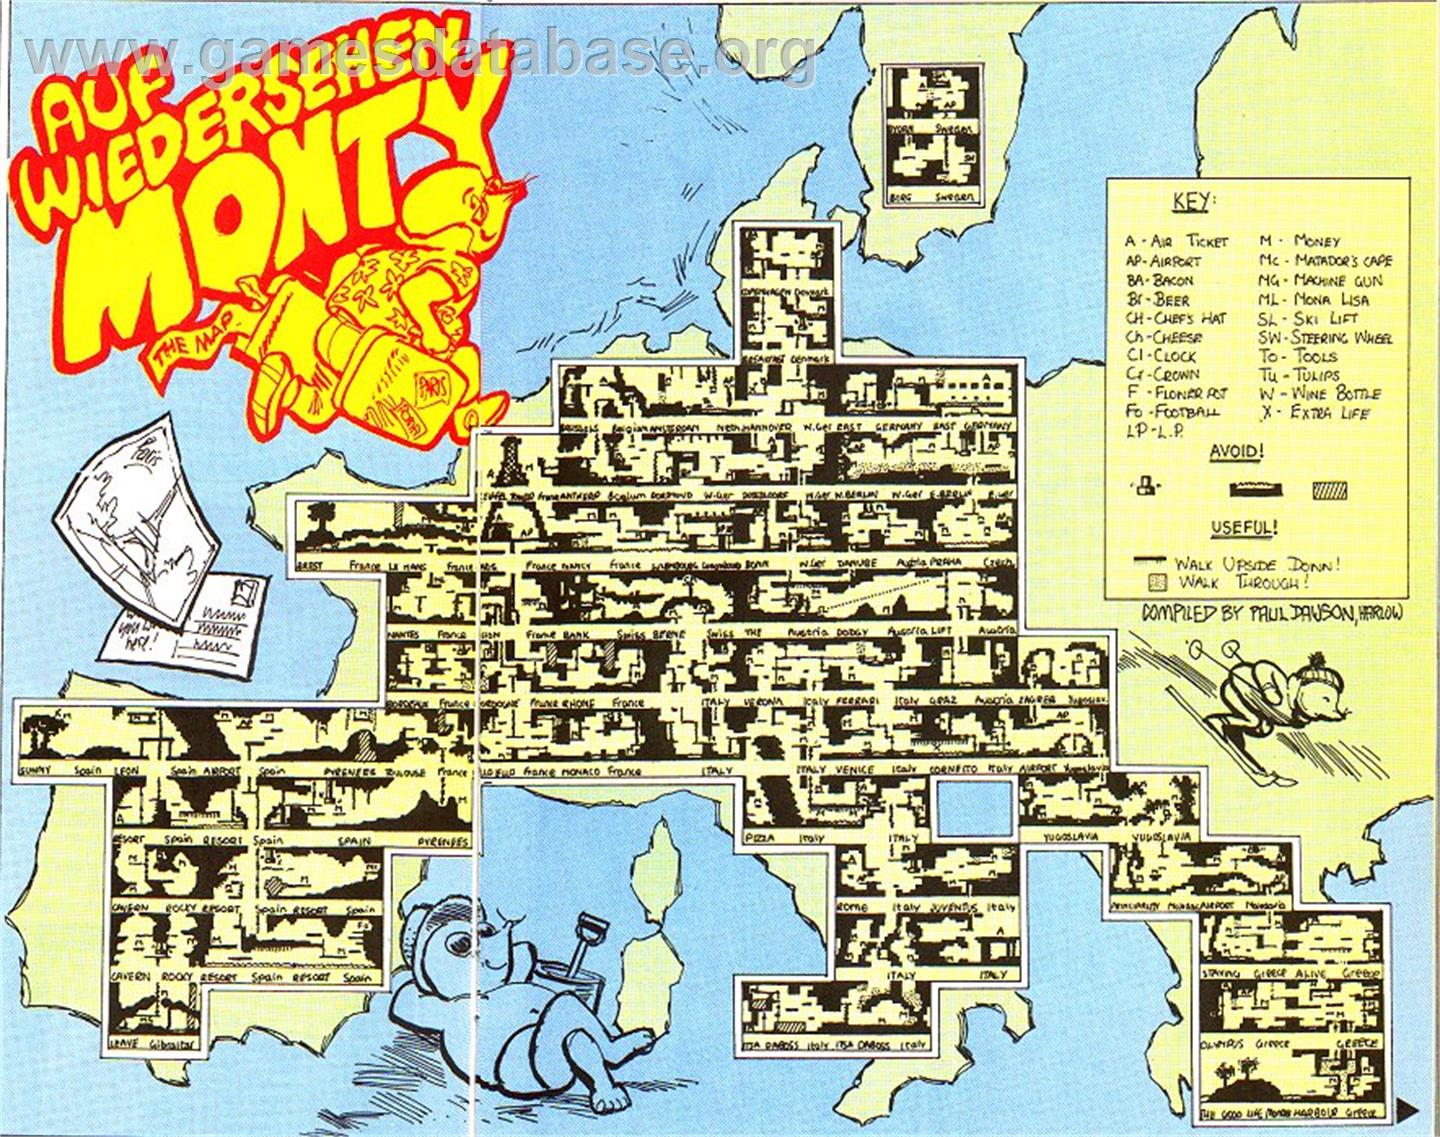 Auf Wiedersehen Monty - Commodore 64 - Artwork - Map